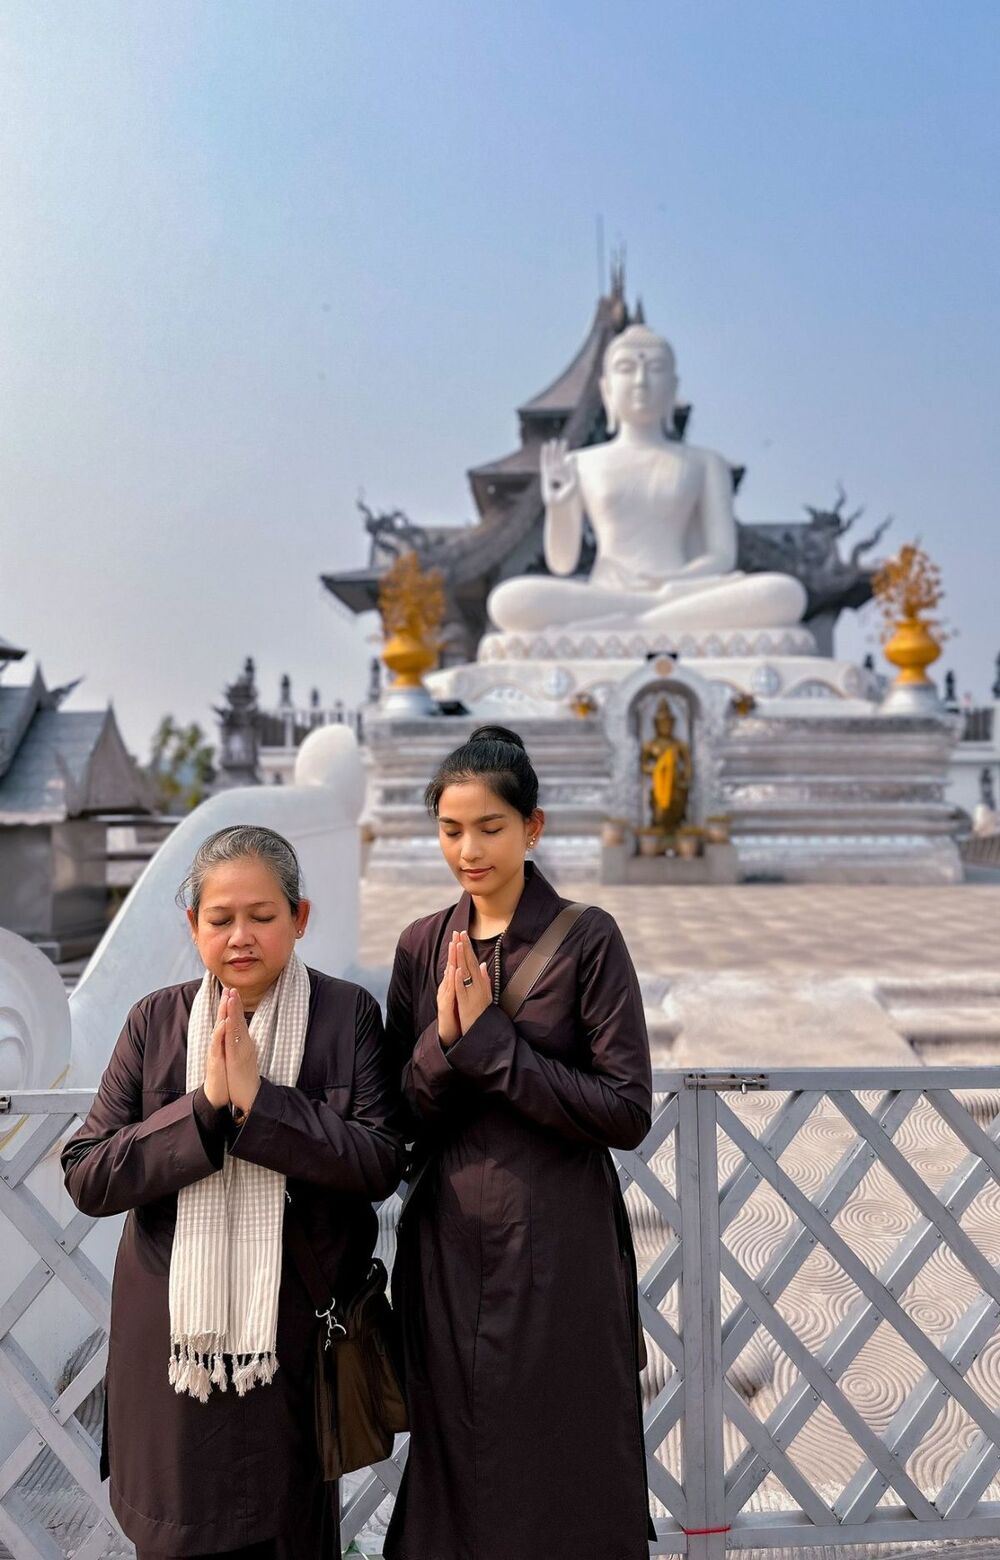 Trương Thị May cùng mẹ đứng trước bức tượng Mahabodhi trong chùa Đại Giác Ngộ. Tương truyền bức tượng này giống hệt hình dáng của Đức Phật.